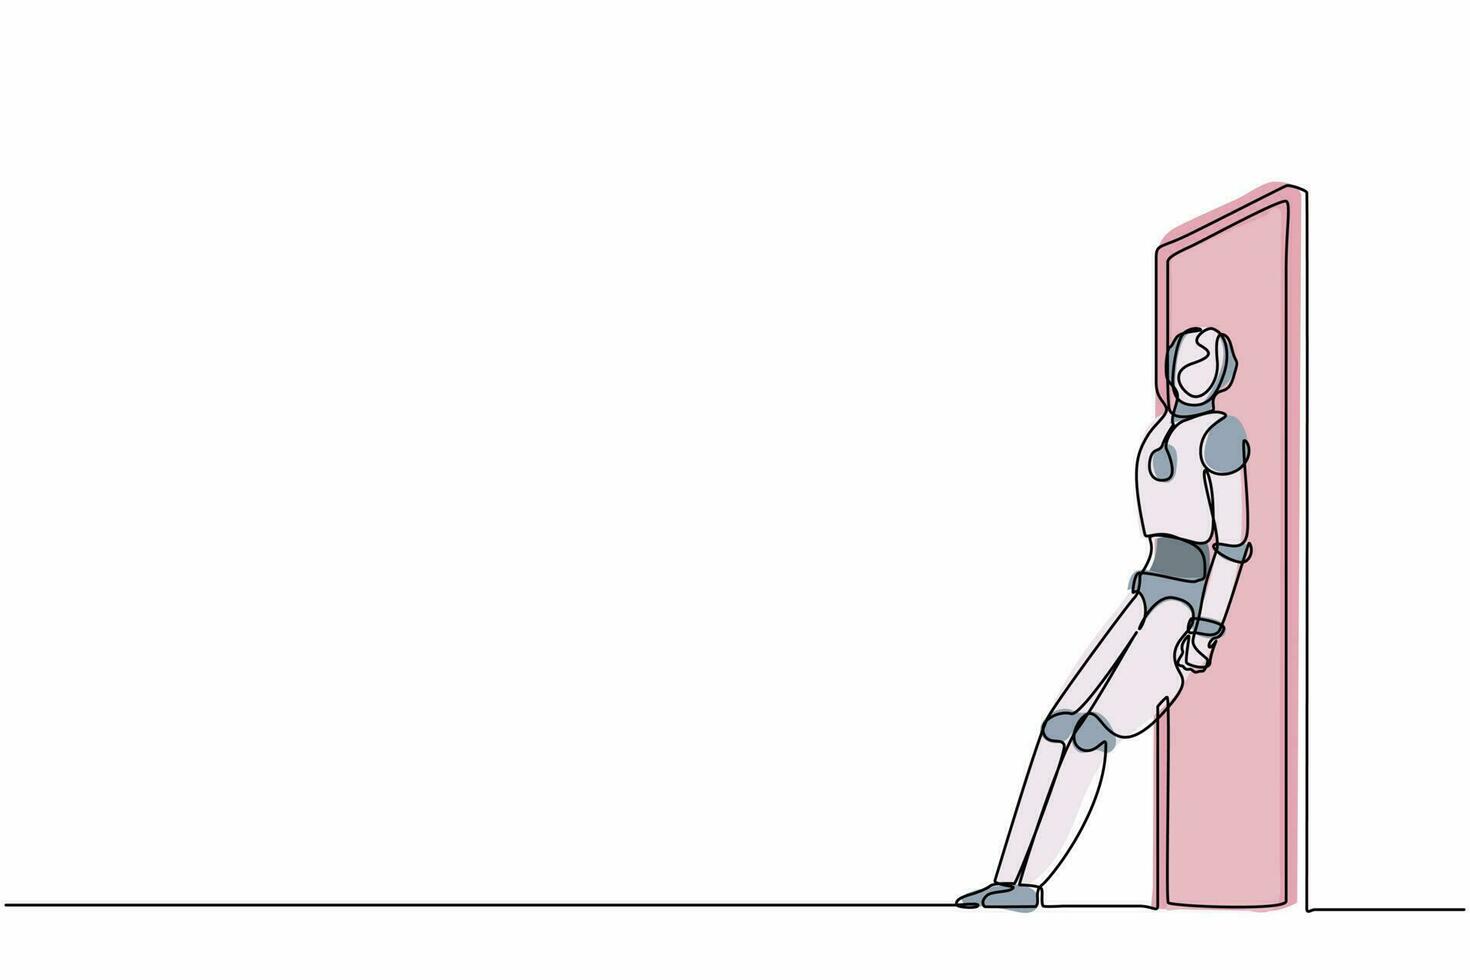 kontinuierlich eine Linie zeichnende Roboter, die stehen und die Tür mit ihrem Rücken schieben. humanoider Roboter kybernetischer Organismus. zukünftiges robotikentwicklungskonzept. einzeiliges zeichnen design vektorgrafik illustration vektor